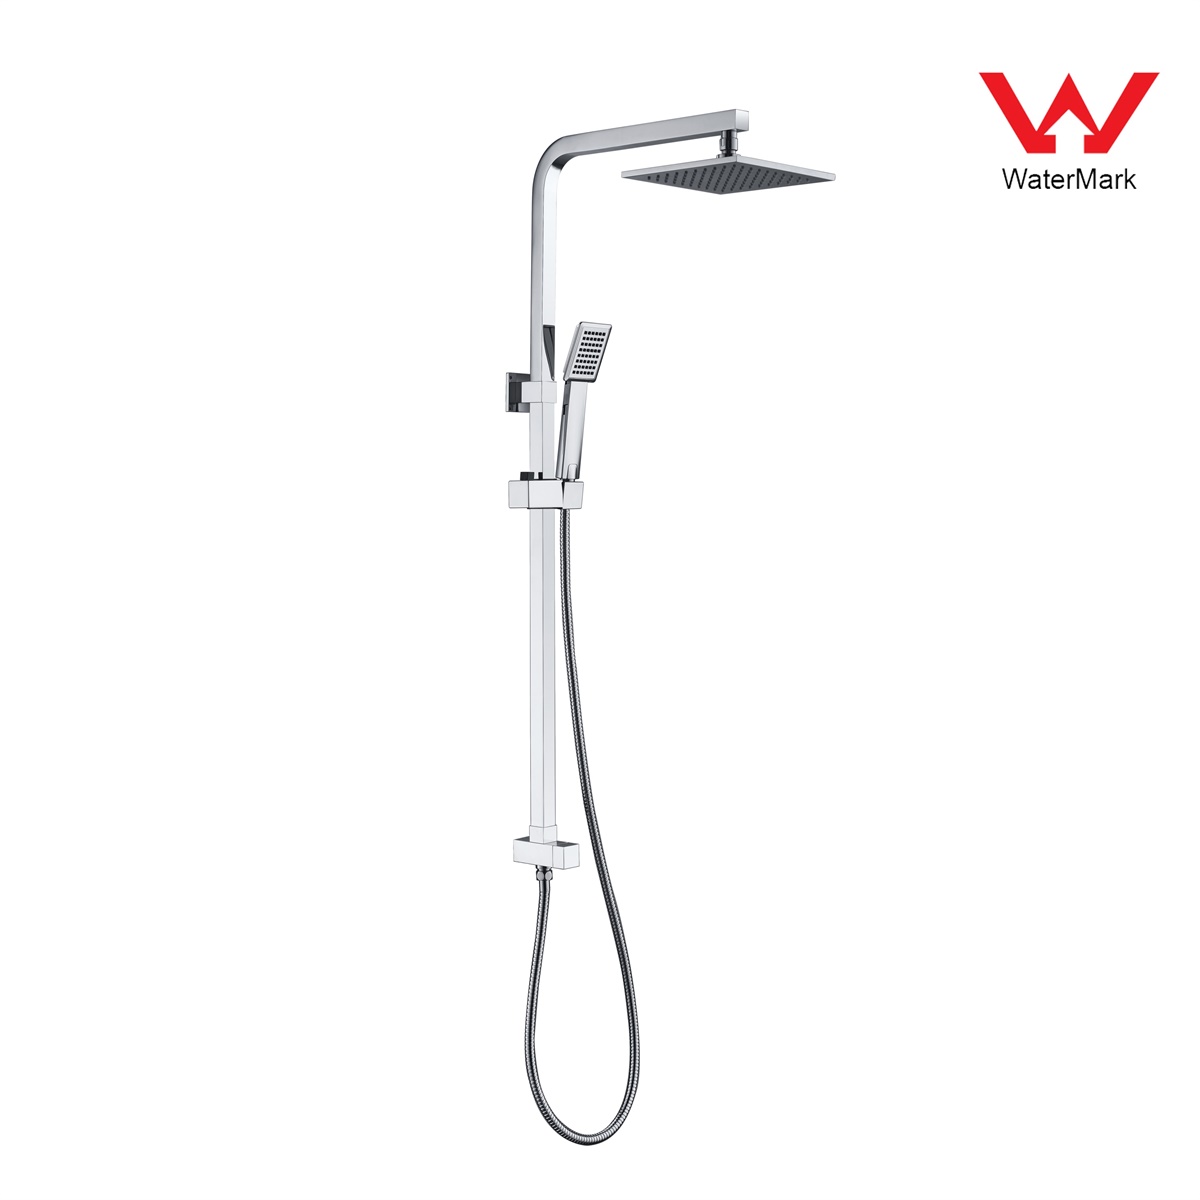 DA610024CP Watermark tanúsítvánnyal rendelkező zuhanykészletek, esőzuhany-készlet, tolózuhany-készlet;